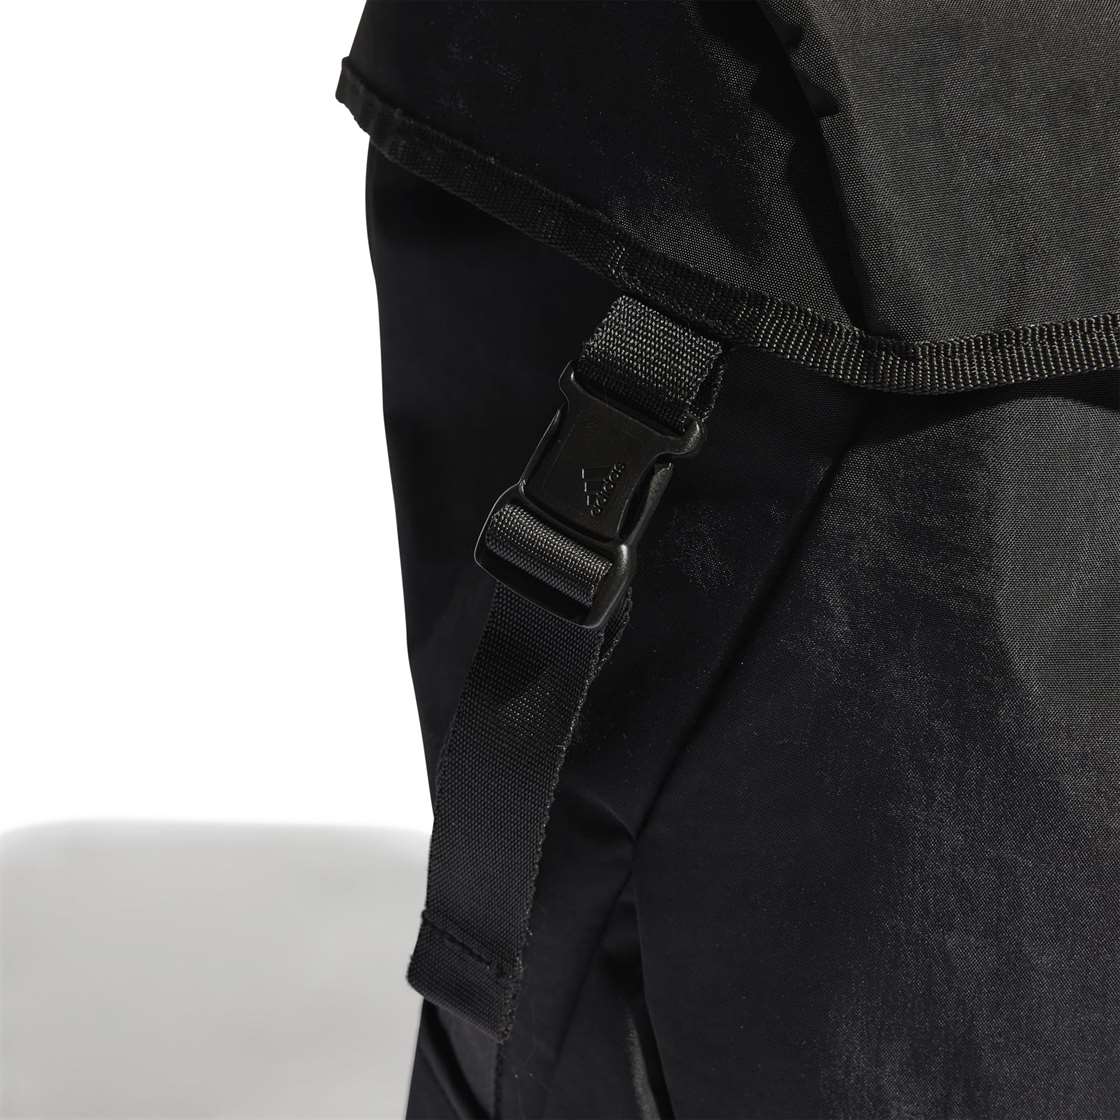 adidas 4ATHLTS Backpack Black